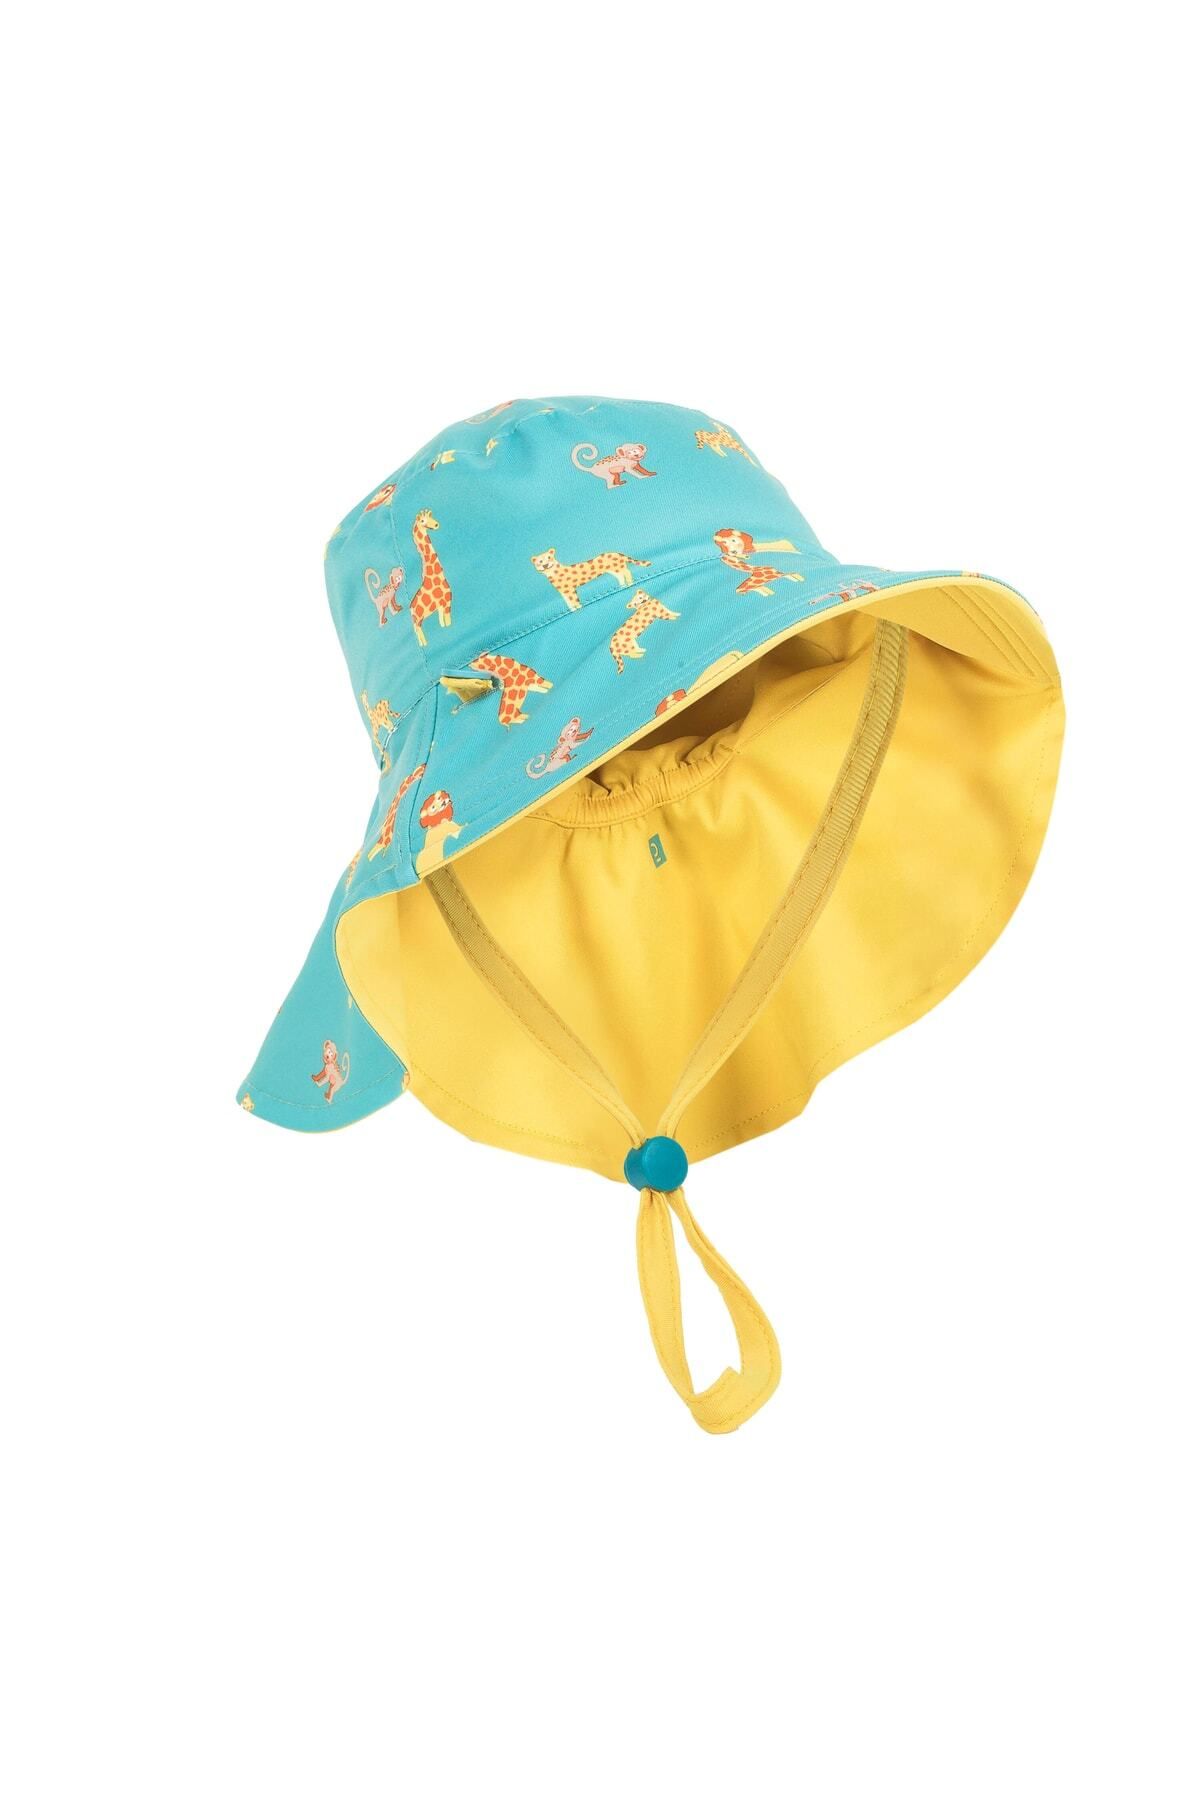 Decathlon Bebek Uv Korumalı Şapka Pembe / Çiçek Baskılı Çocuk Şapka Kız